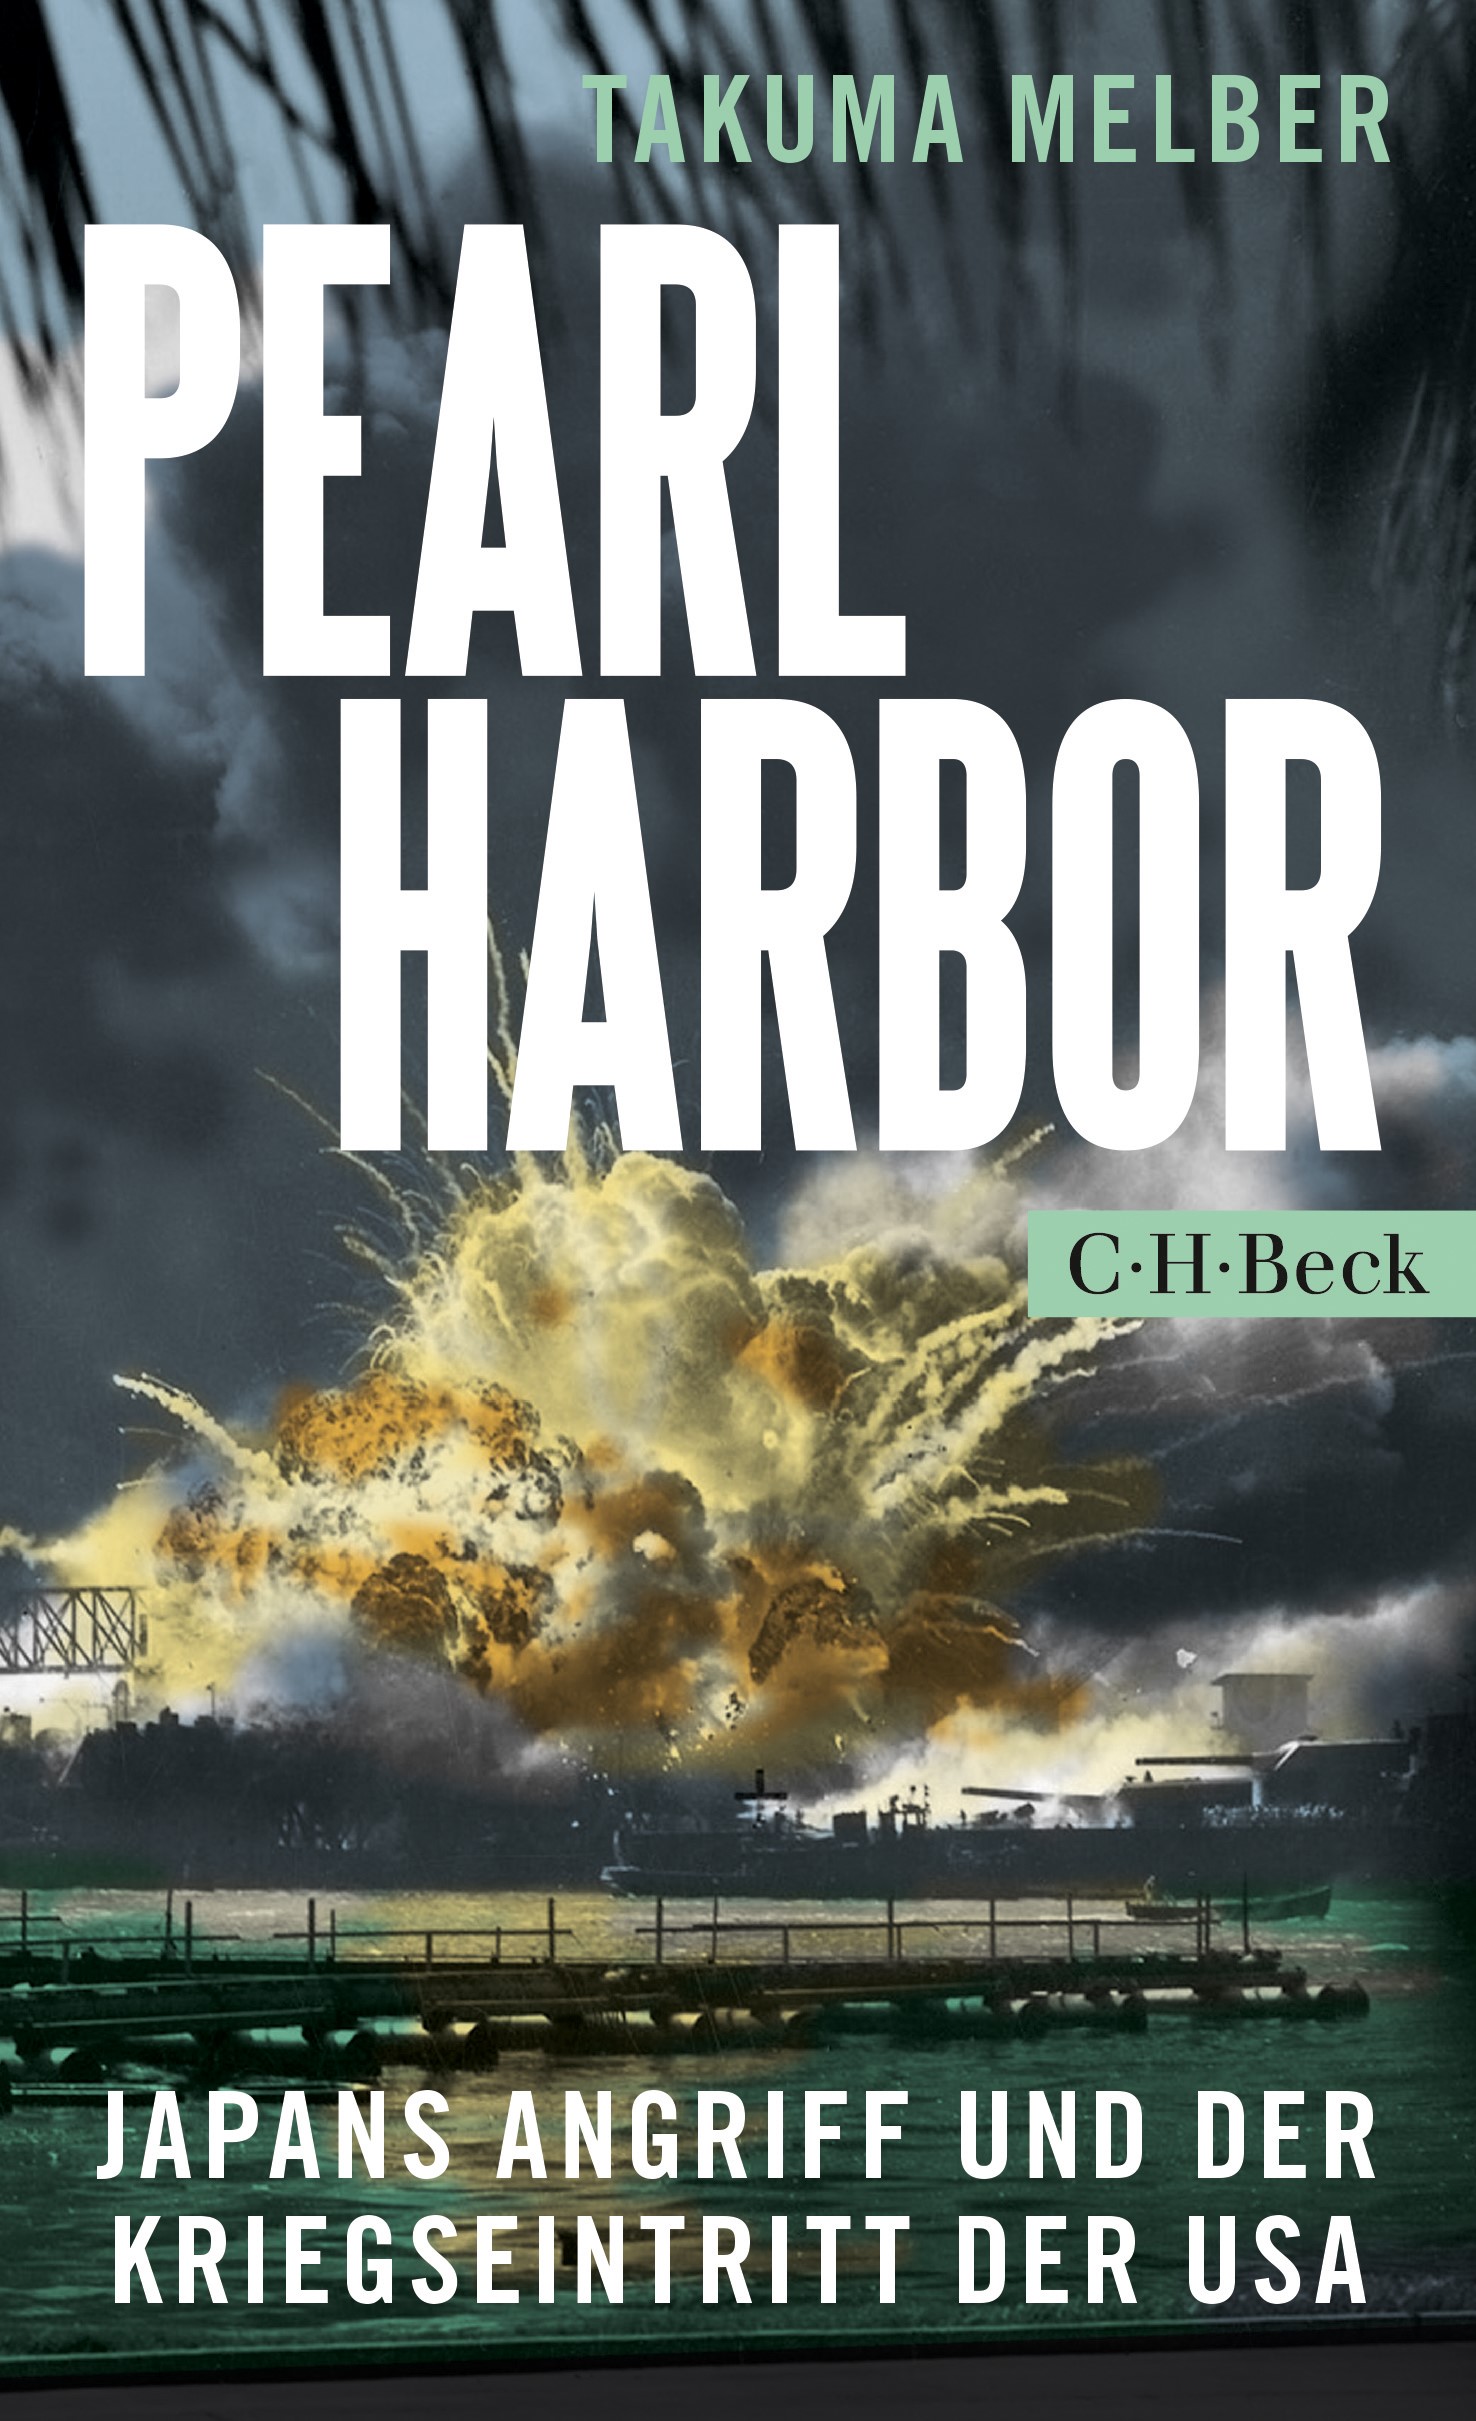 Cover: Melber, Takuma, Pearl Harbor